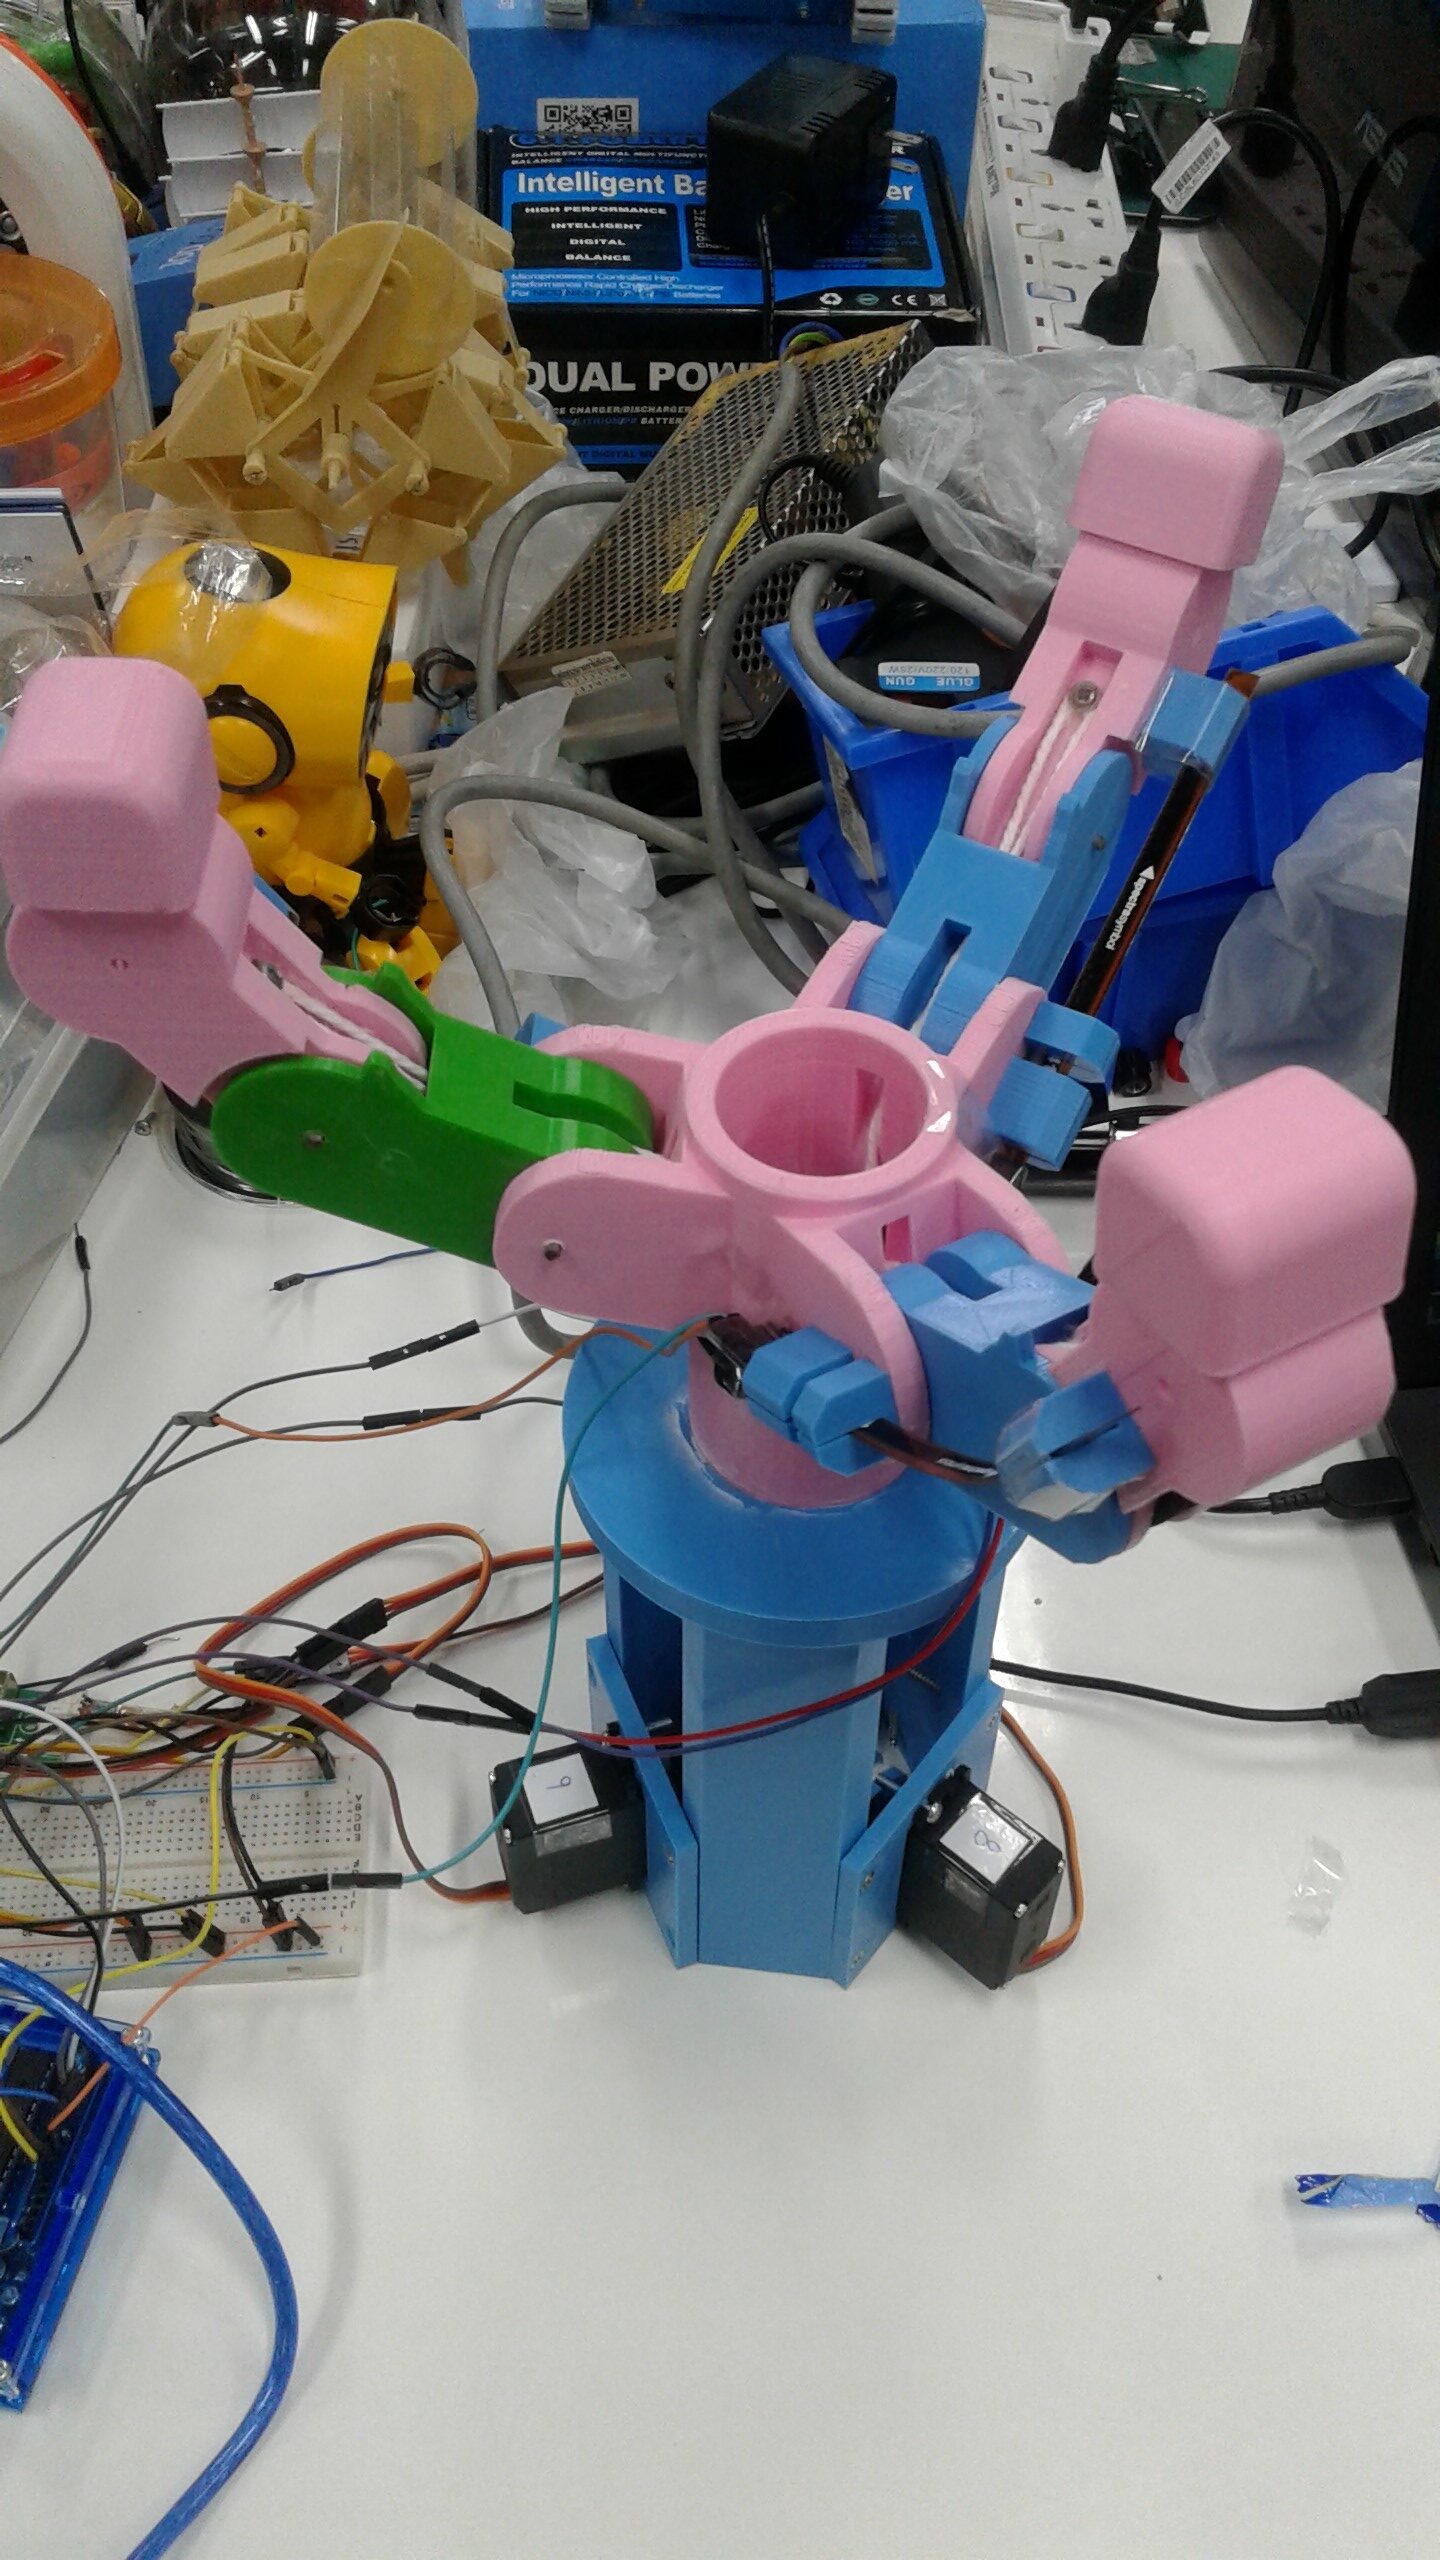 การพัฒนาแขนกลเพื่อตรวจจับวัตถุโดยวัดจากค่าความโค้งงอของ Flex Sensor (Robot Gripper for Detecting Object Using Flex Sensor)